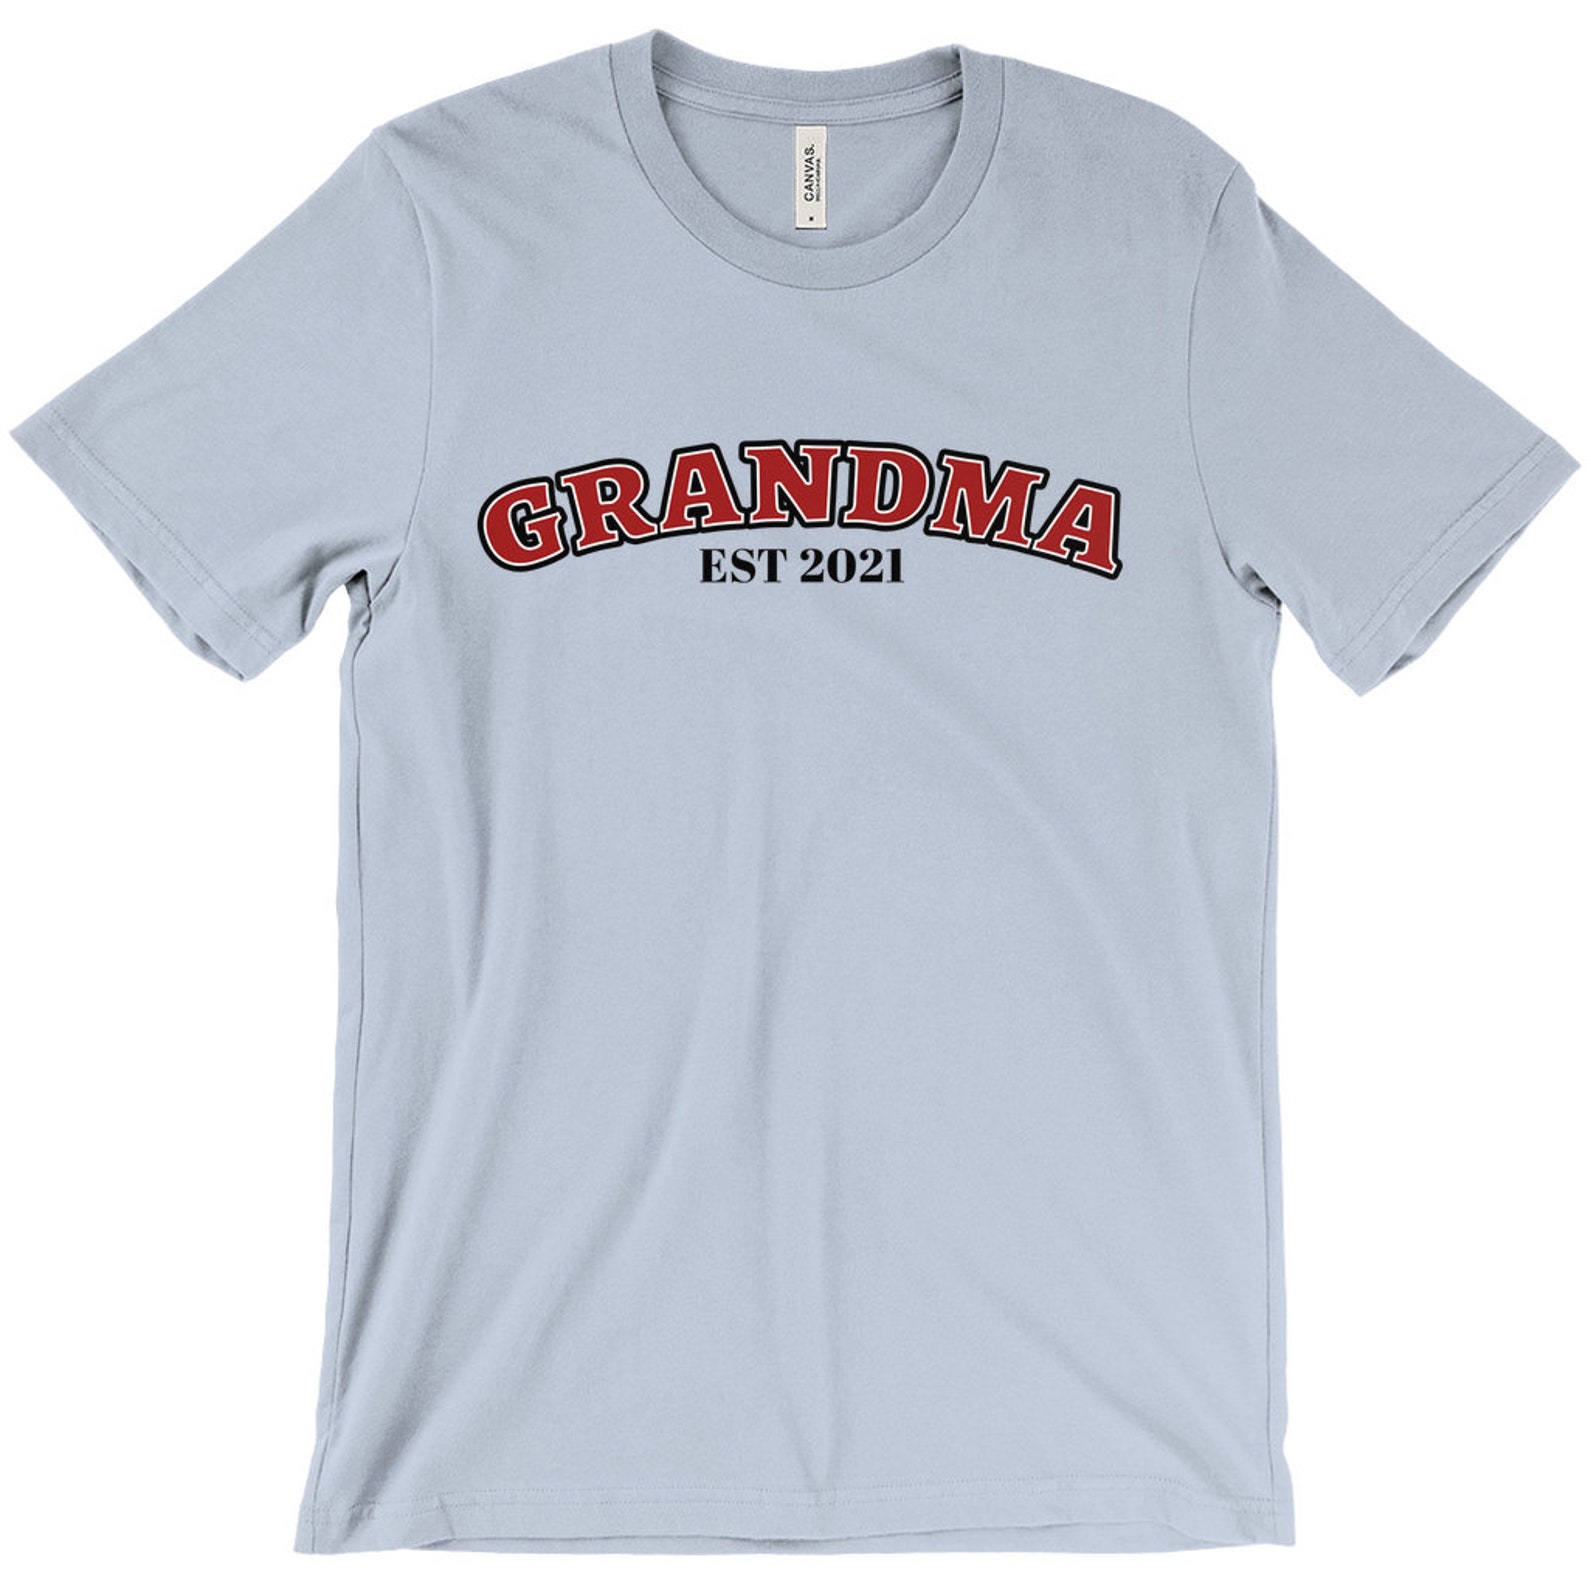 Grandma Est Shirt Grandma Shirt New Grandma Gift Grandma - Etsy